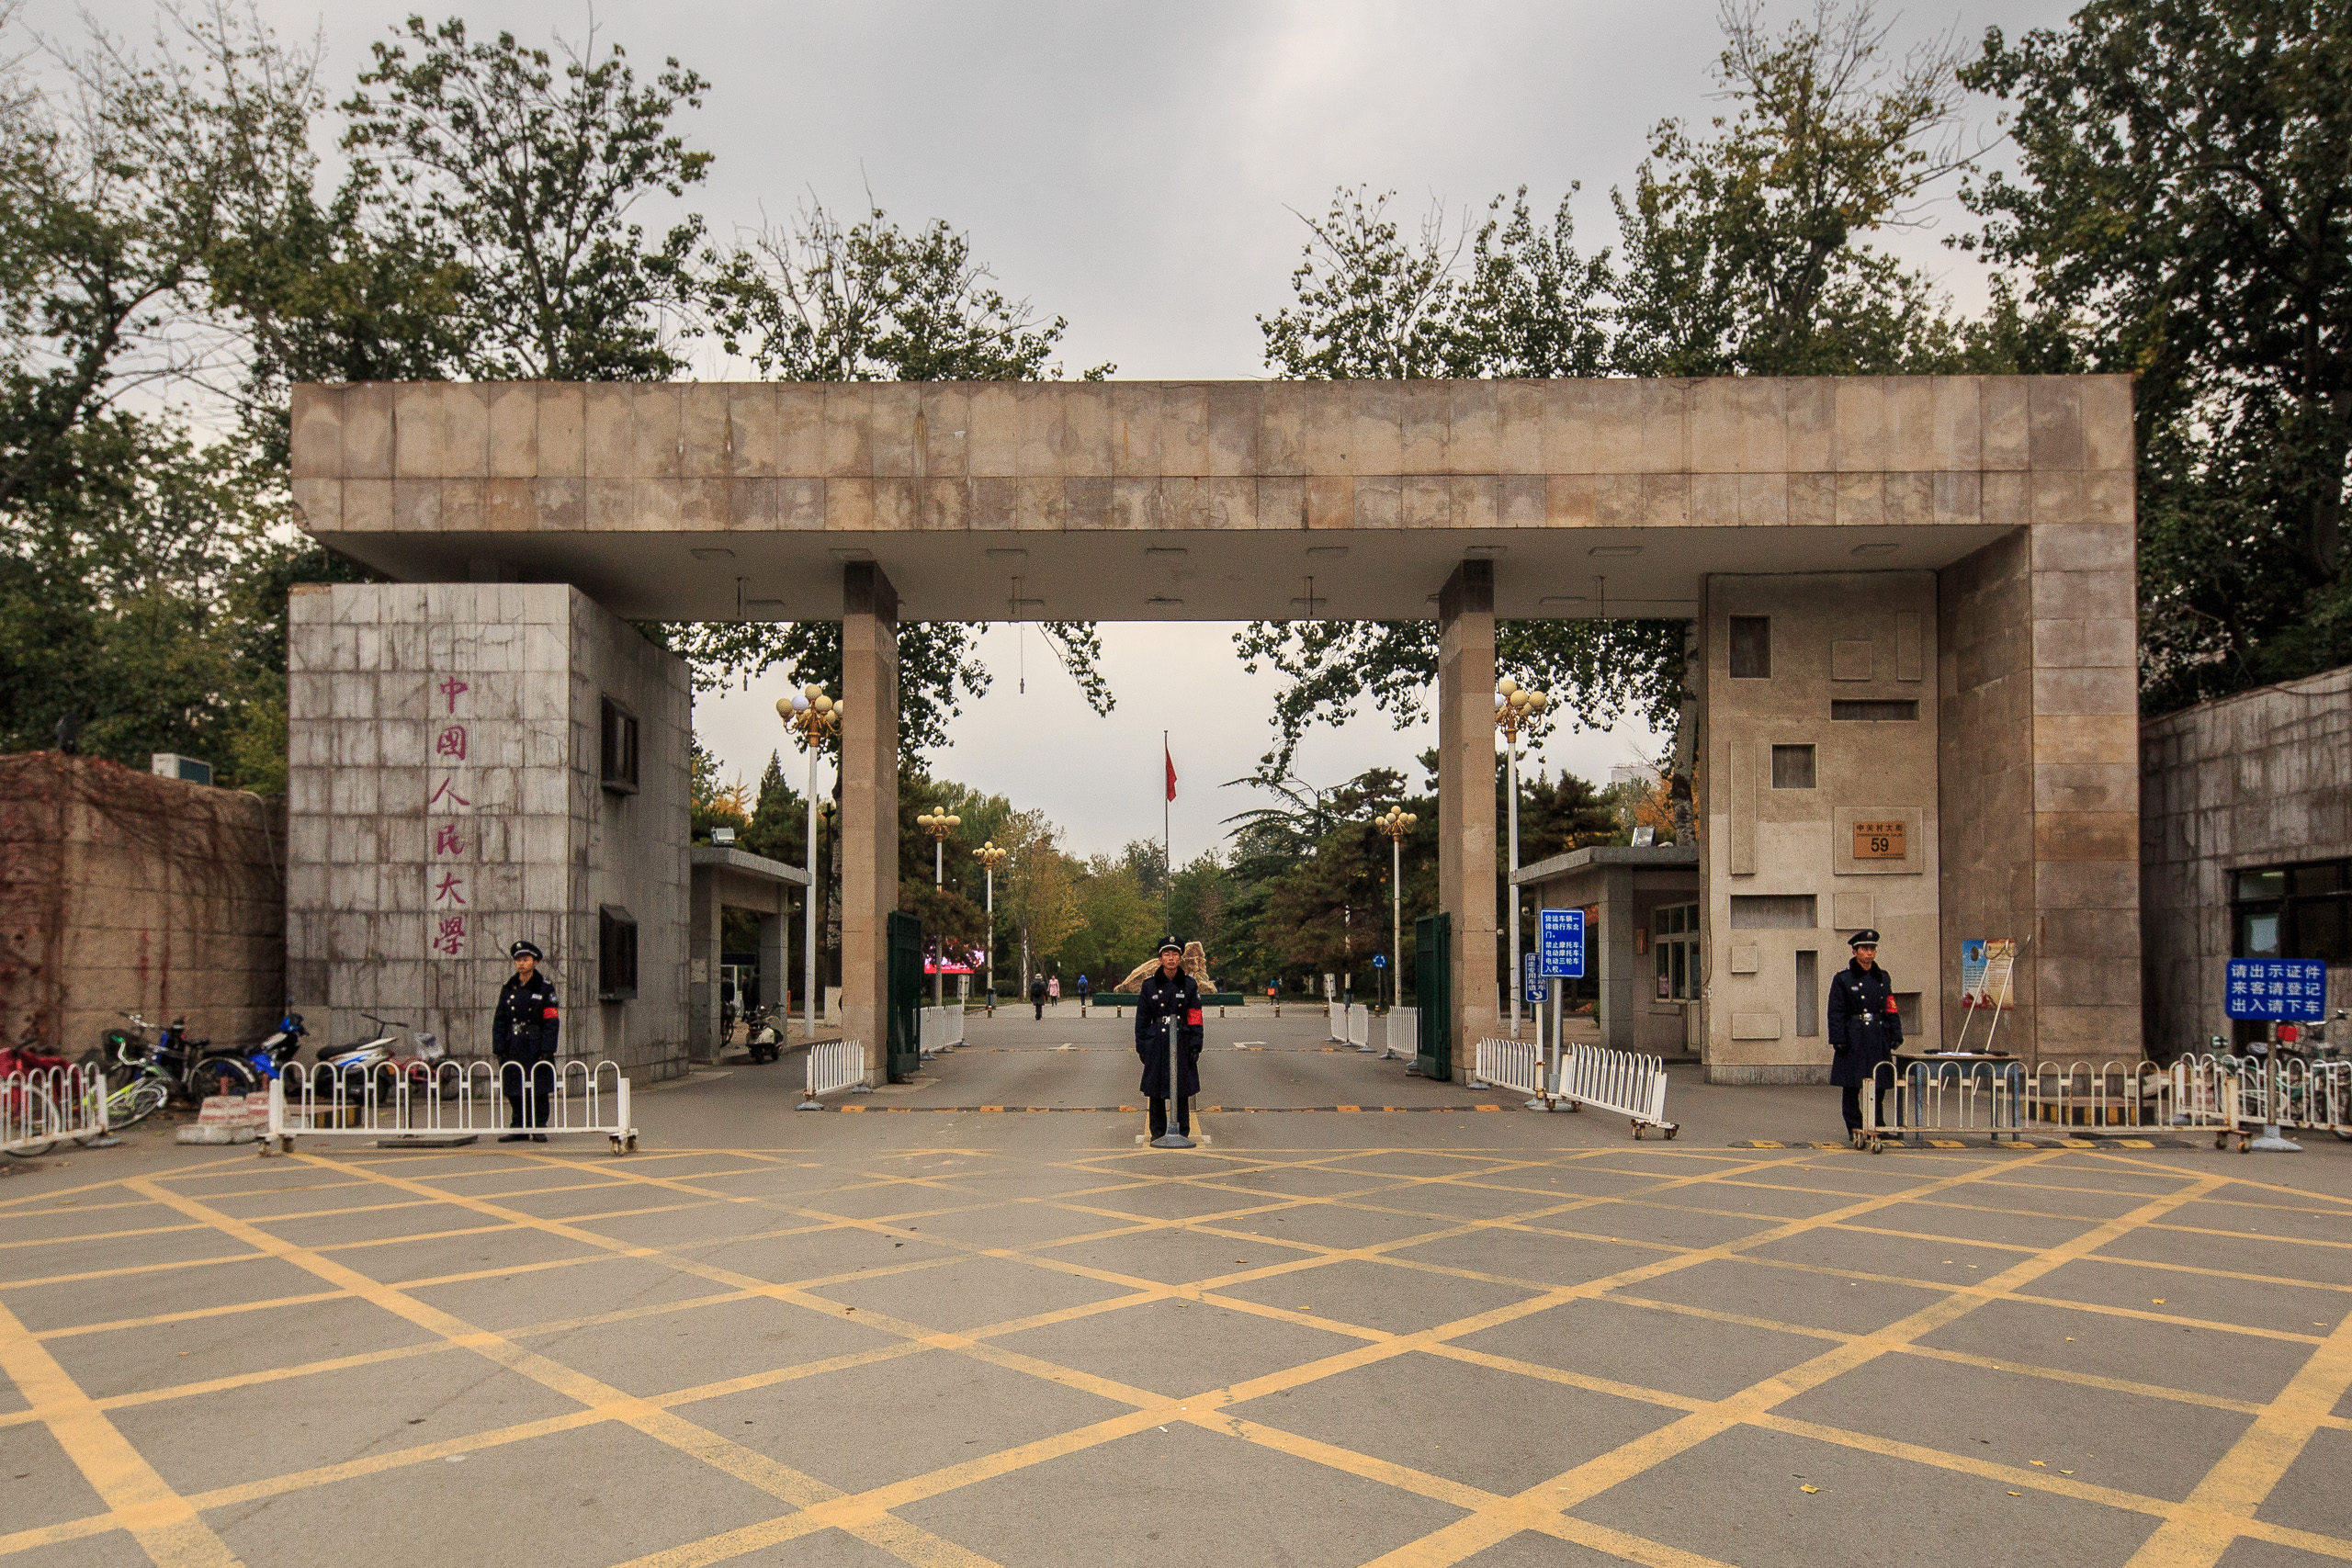 中国人民大学新老建筑对比：
第一组：